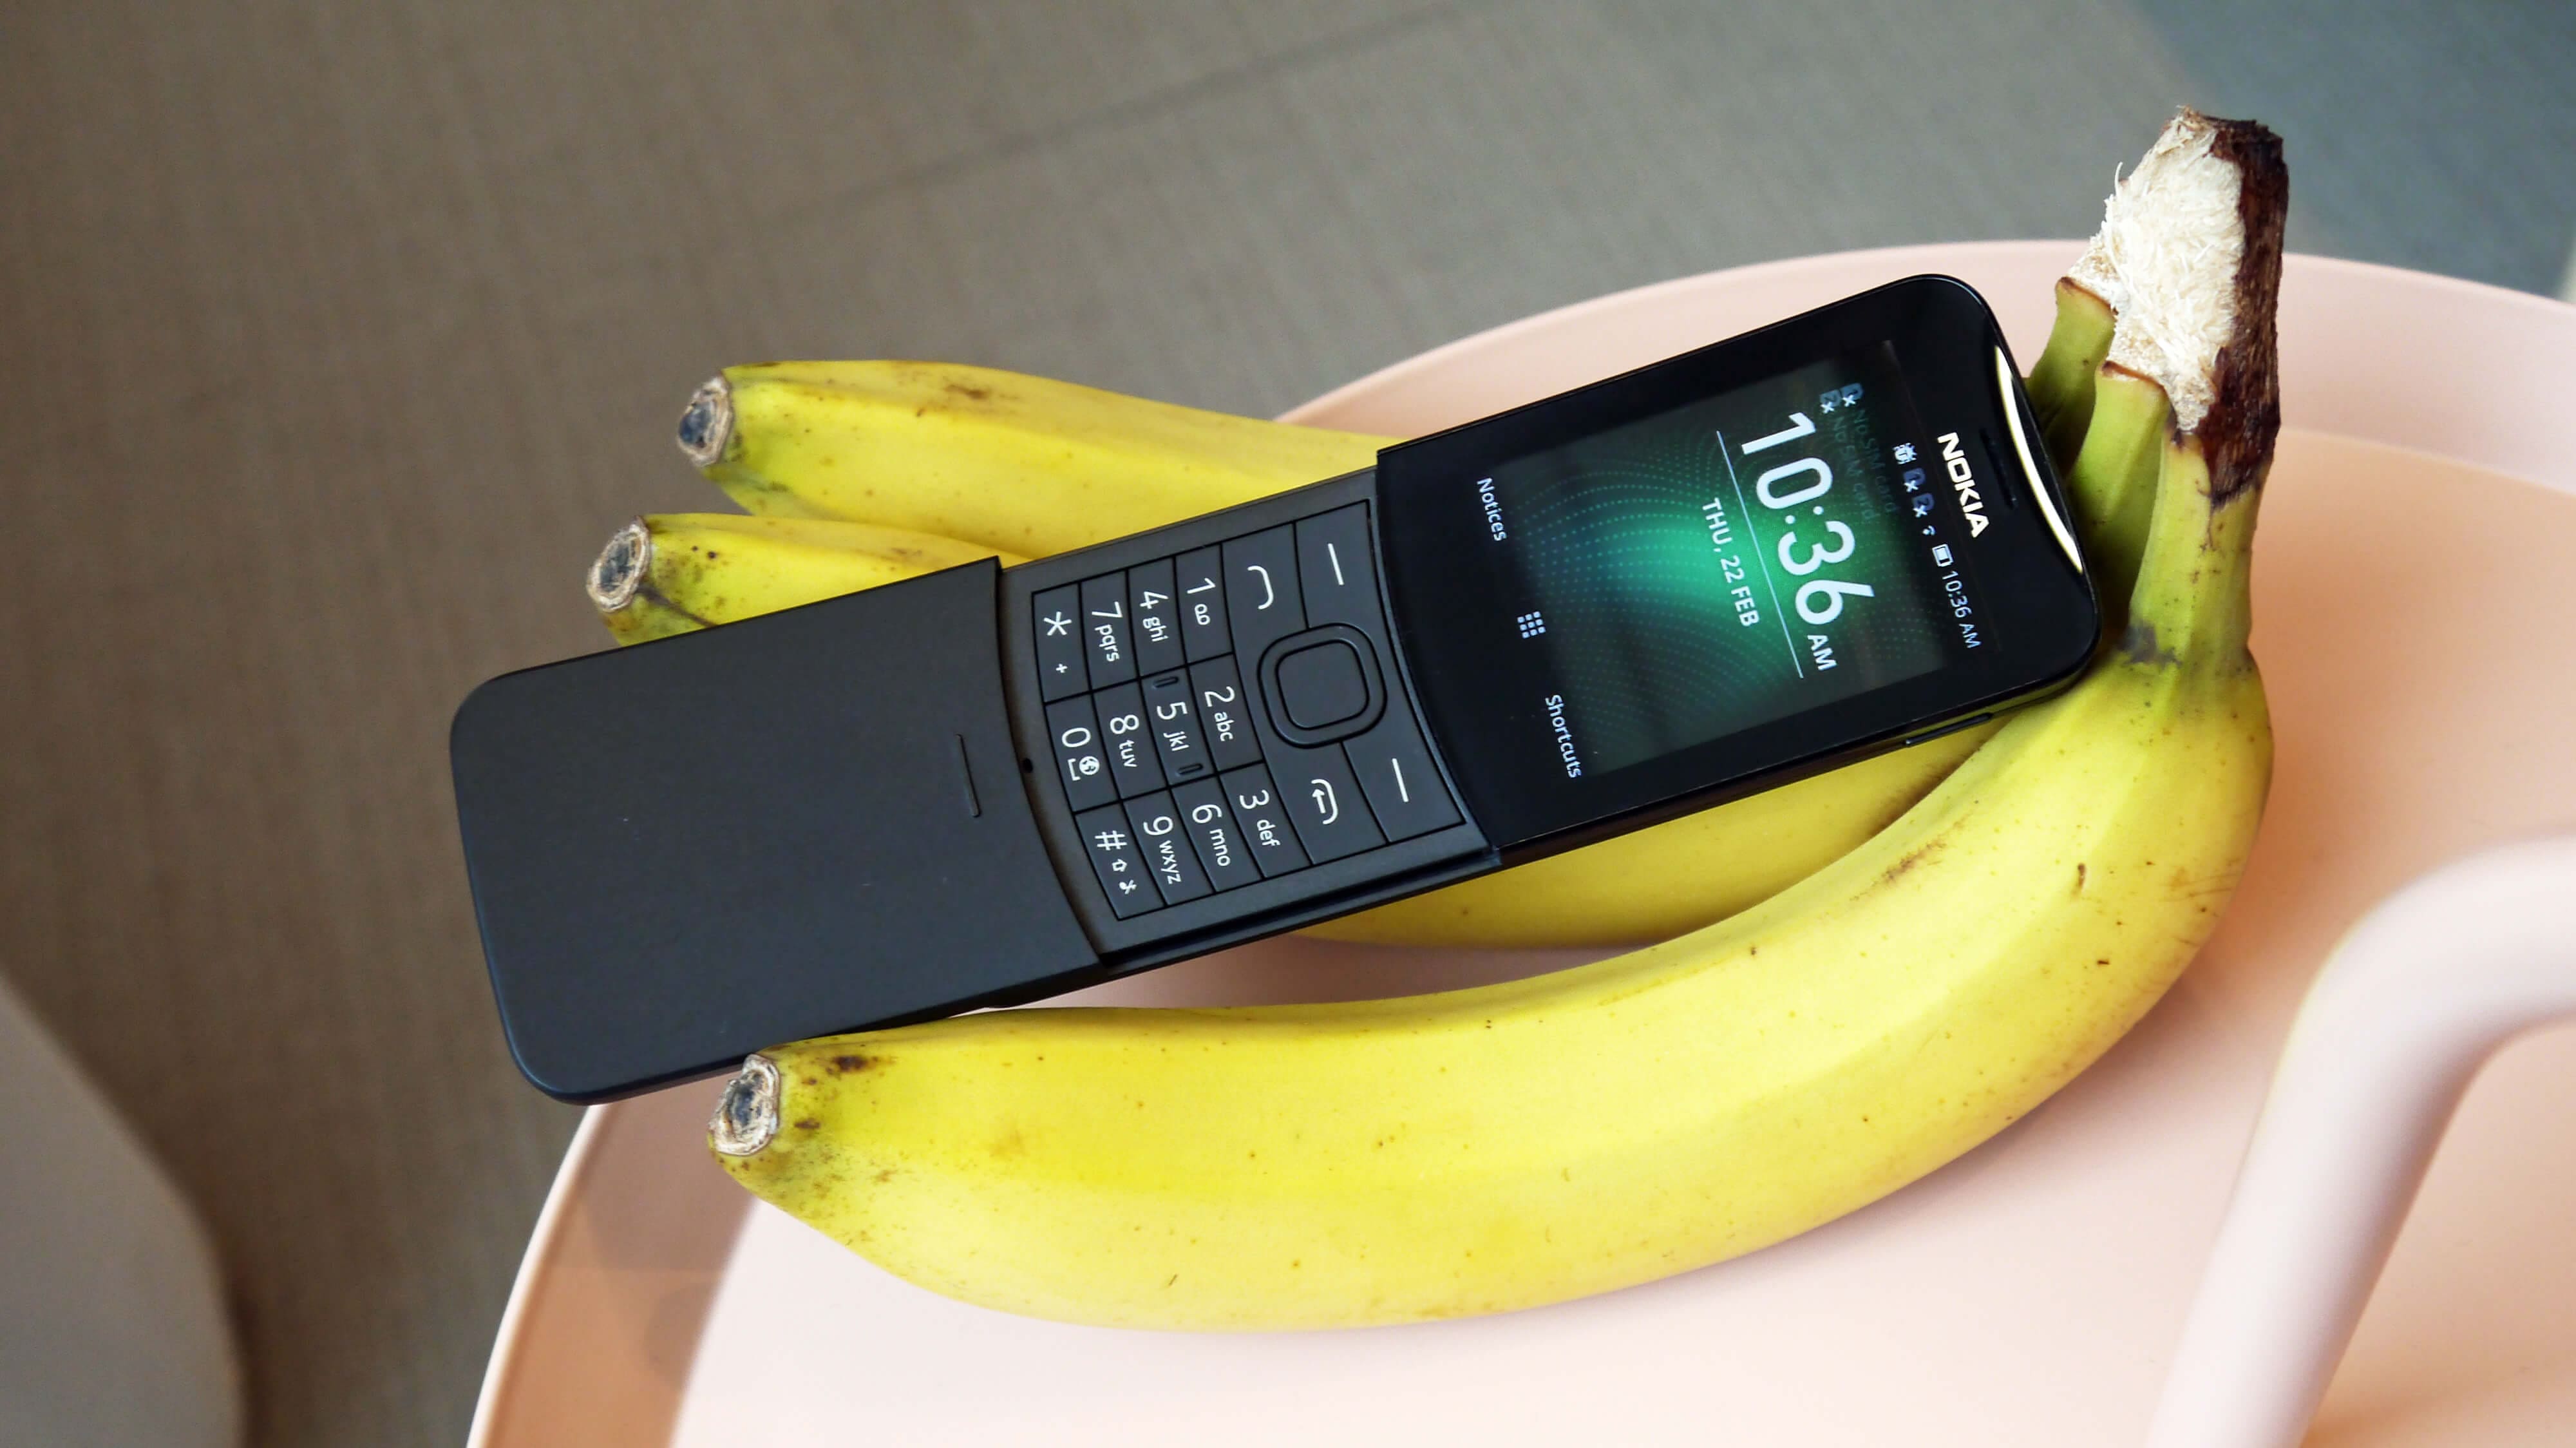 Nokia  8110 4G (Black)- 2.4Inch/ 2 sim